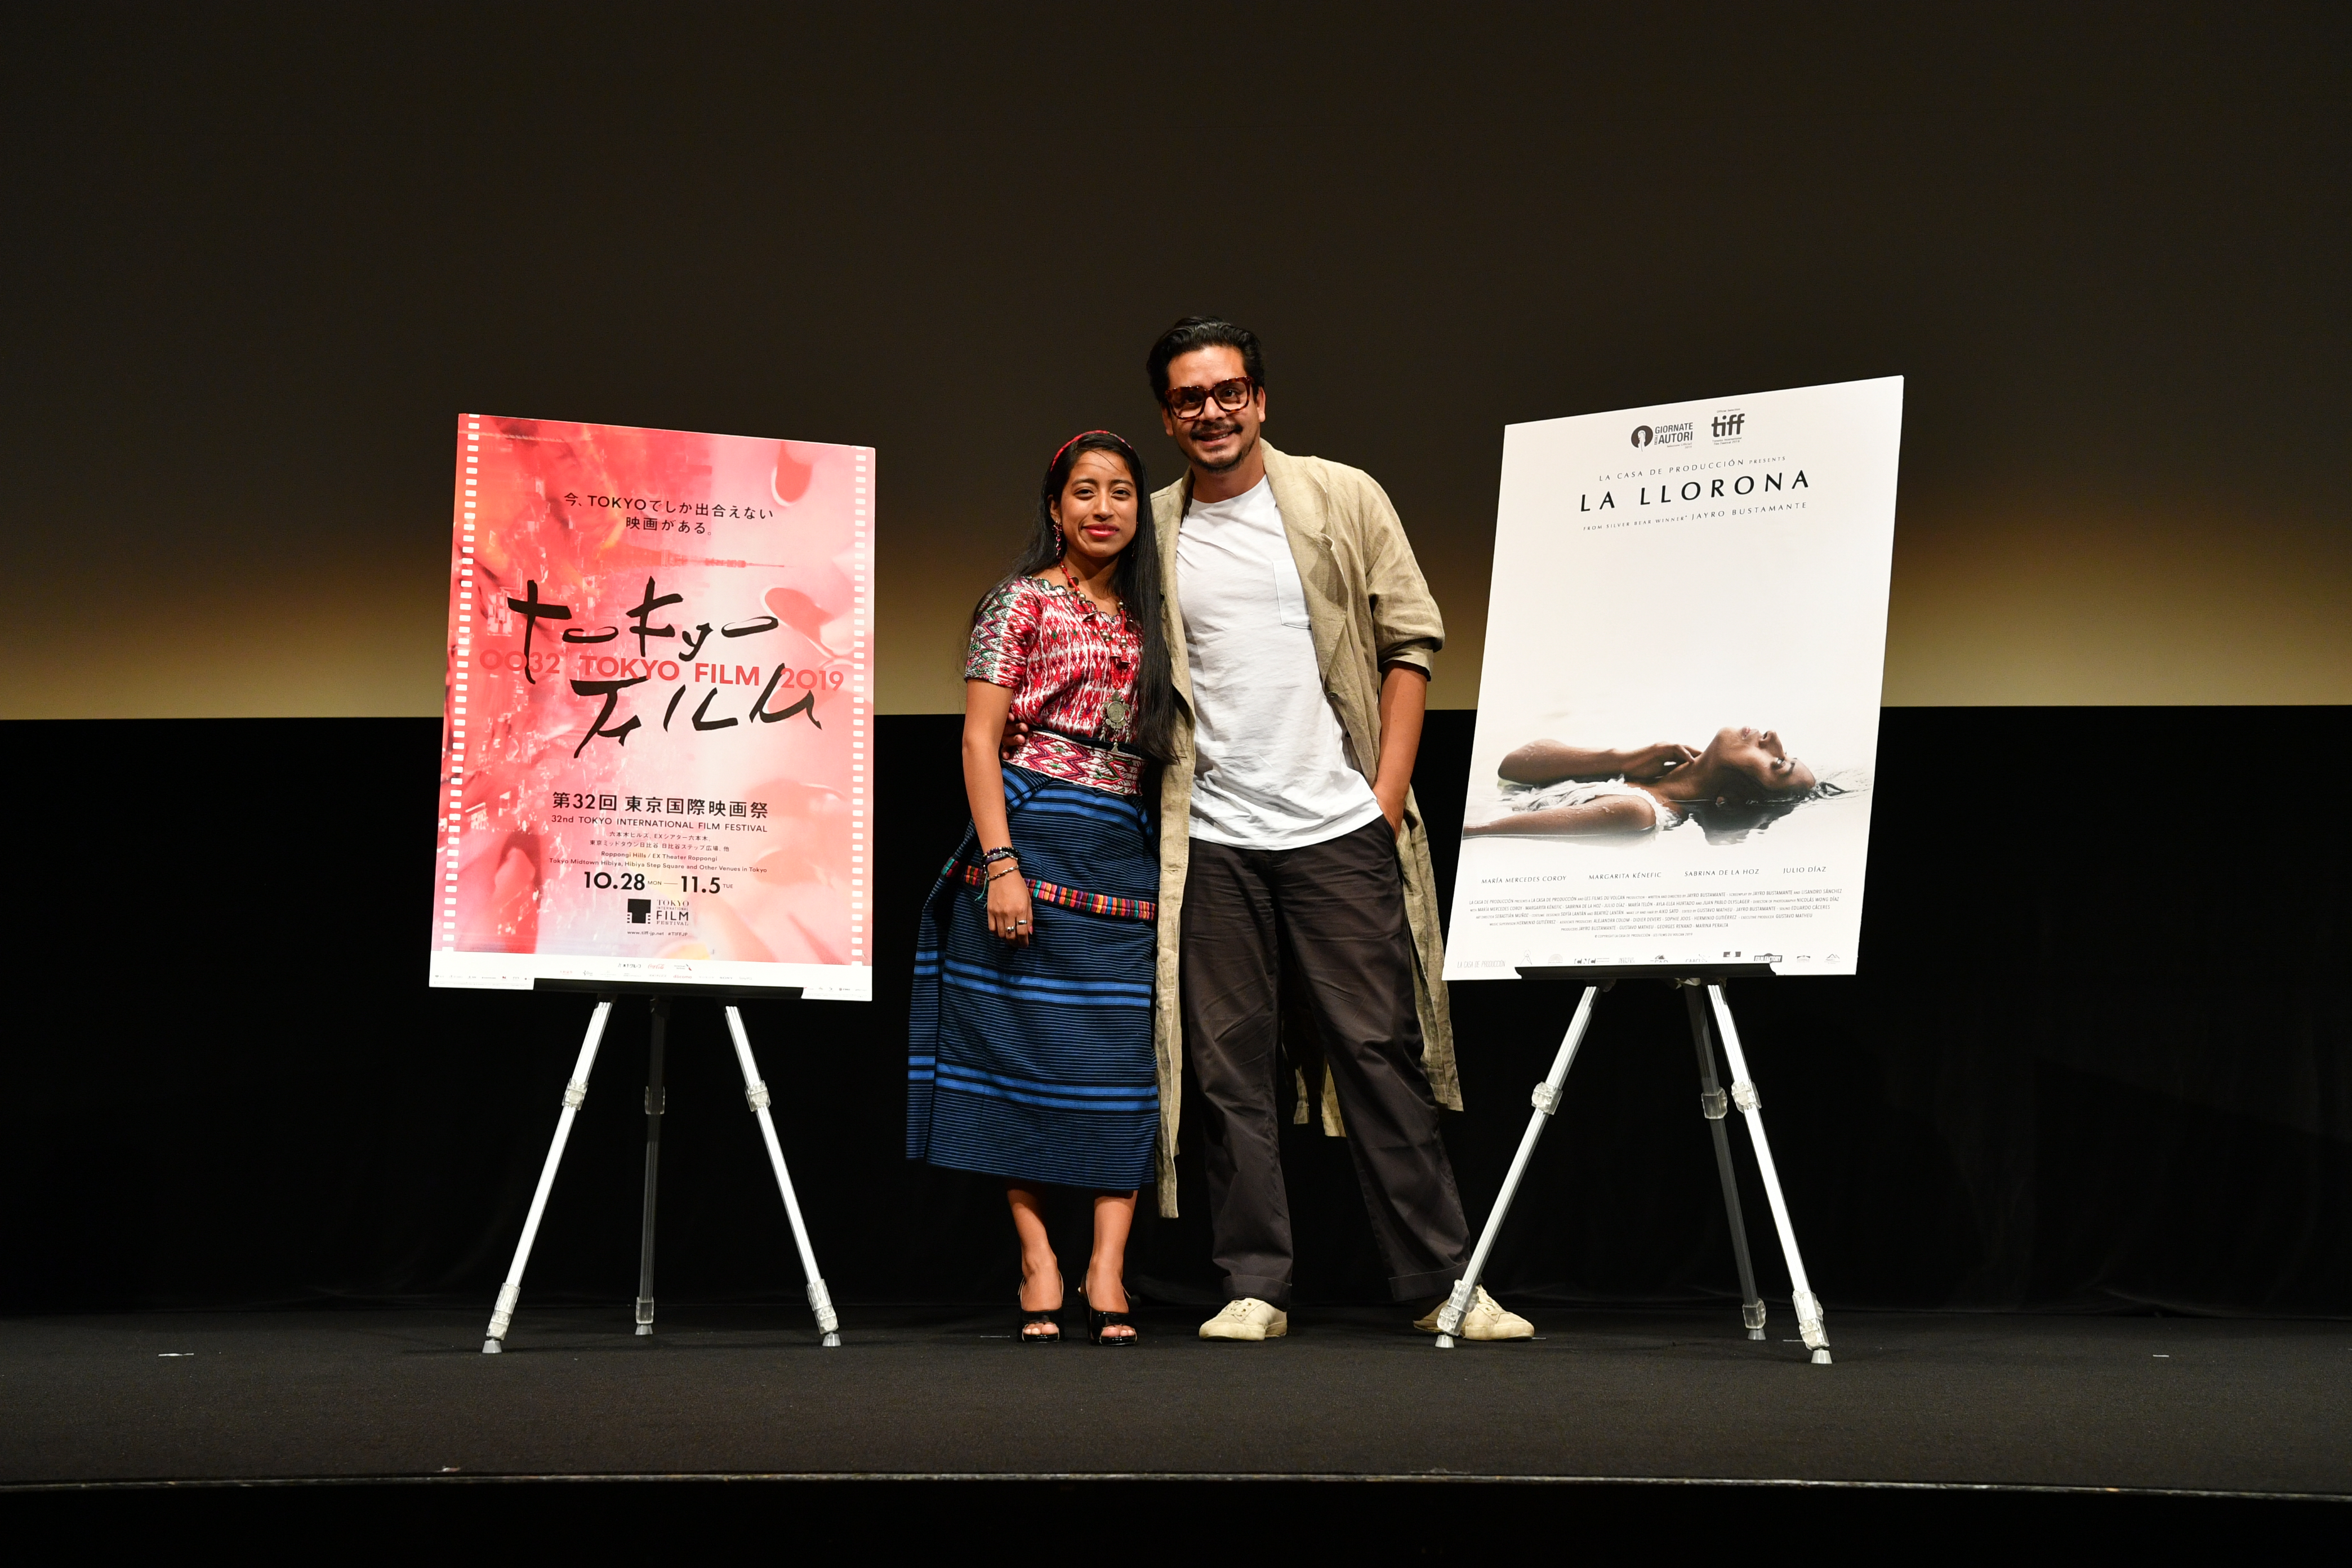 Jayro Bustamante y María Mercedes Coroy conversan acerca del cine y Guatemala para Prensa Libre.